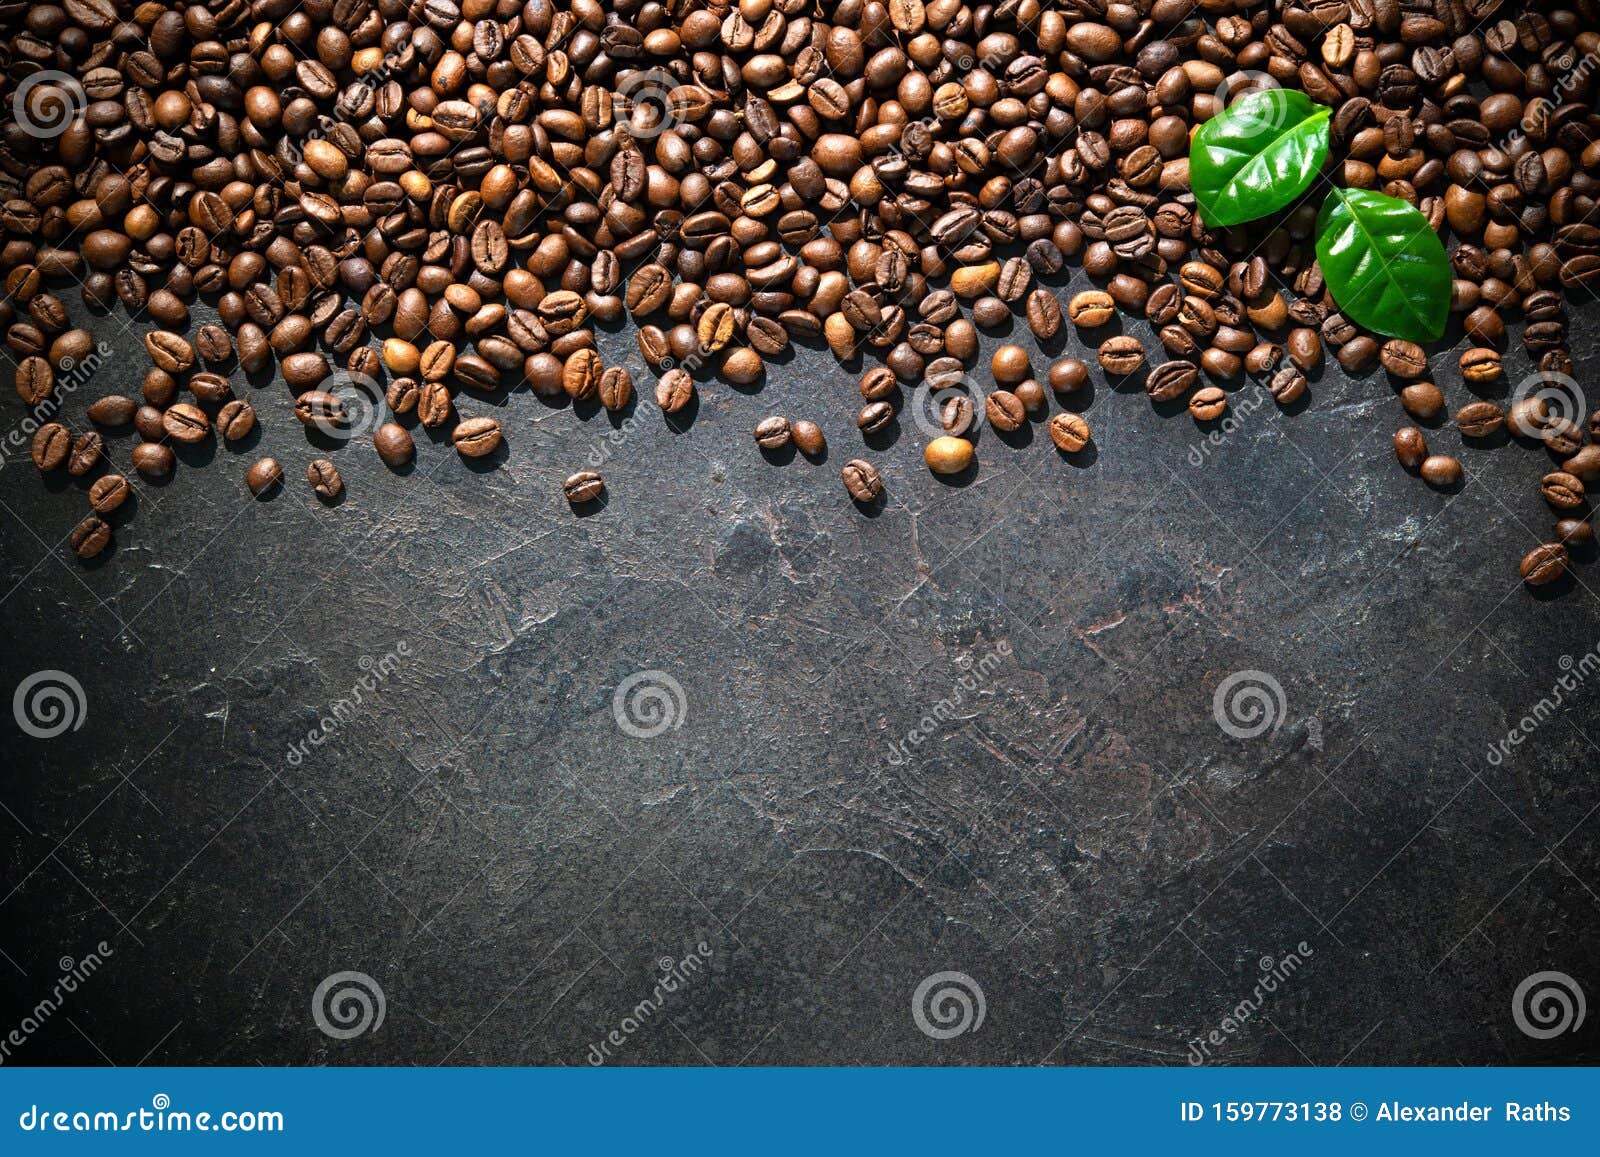 Coffee leaf rust фото 61